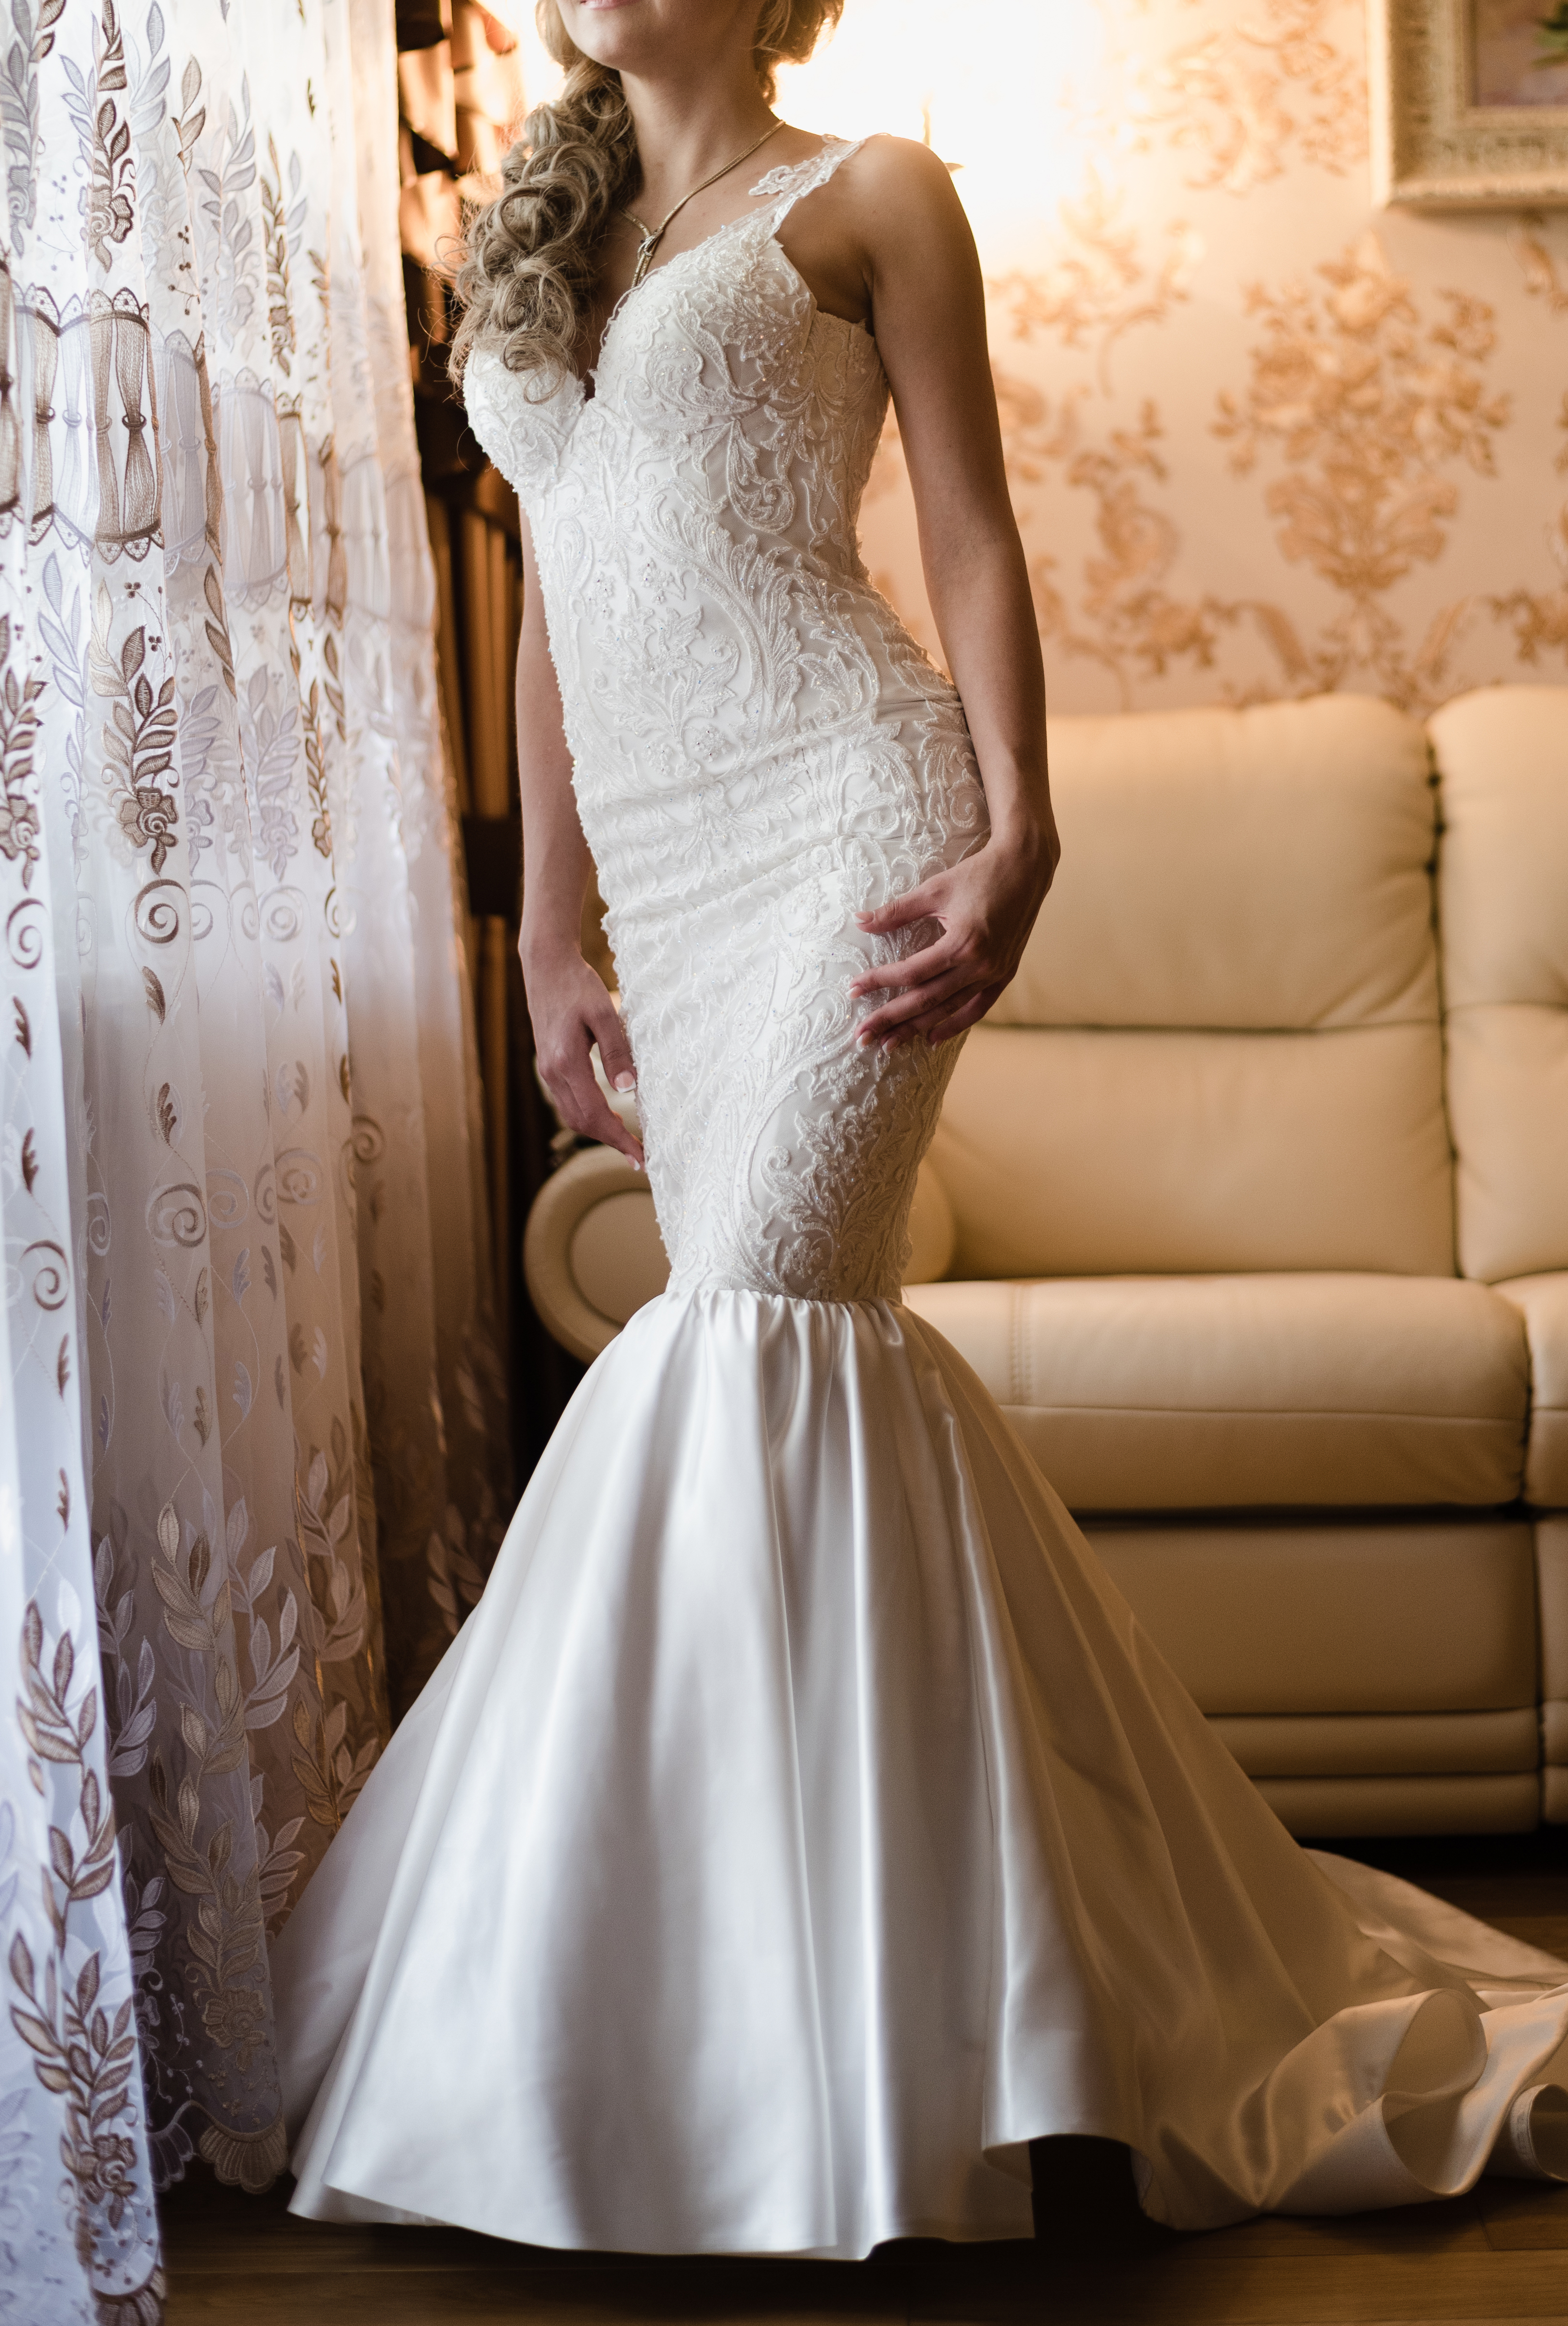 Una novia vestida de novia | Foto: Shutterstock